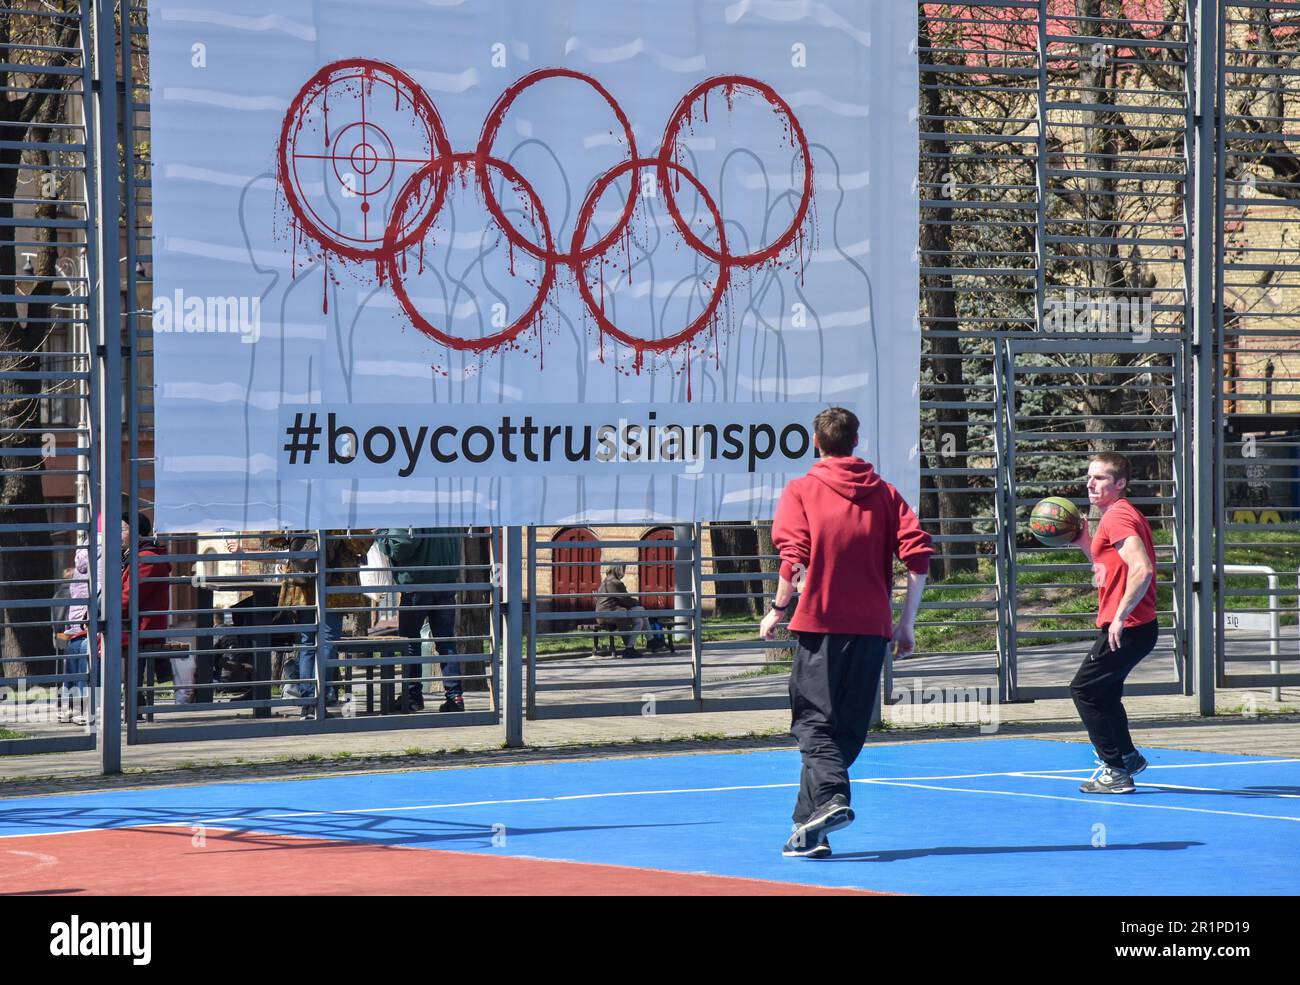 Die Leute spielen Basketball auf einem Banner mit der Inschrift #BoycottRussianSport auf einem der Sportplätze in Lemberg. Die Ukraine und viele Länder auf der ganzen Welt fordern, dass russische Athleten wegen des von Russland ausgelösten russisch-ukrainischen Krieges von den Olympischen Spielen und anderen internationalen Wettkämpfen ausgeschlossen werden. Viele ukrainische Athleten, die die Ukraine vor dem russischen Aggressor verteidigten, sind bereits in diesem Krieg gestorben. Zur Unterstützung des Boykotts wurde ein Banner mit der Aufschrift #BoycottRussianSport auf einem der Sportplätze in Lemberg aufgehängt. Stockfoto